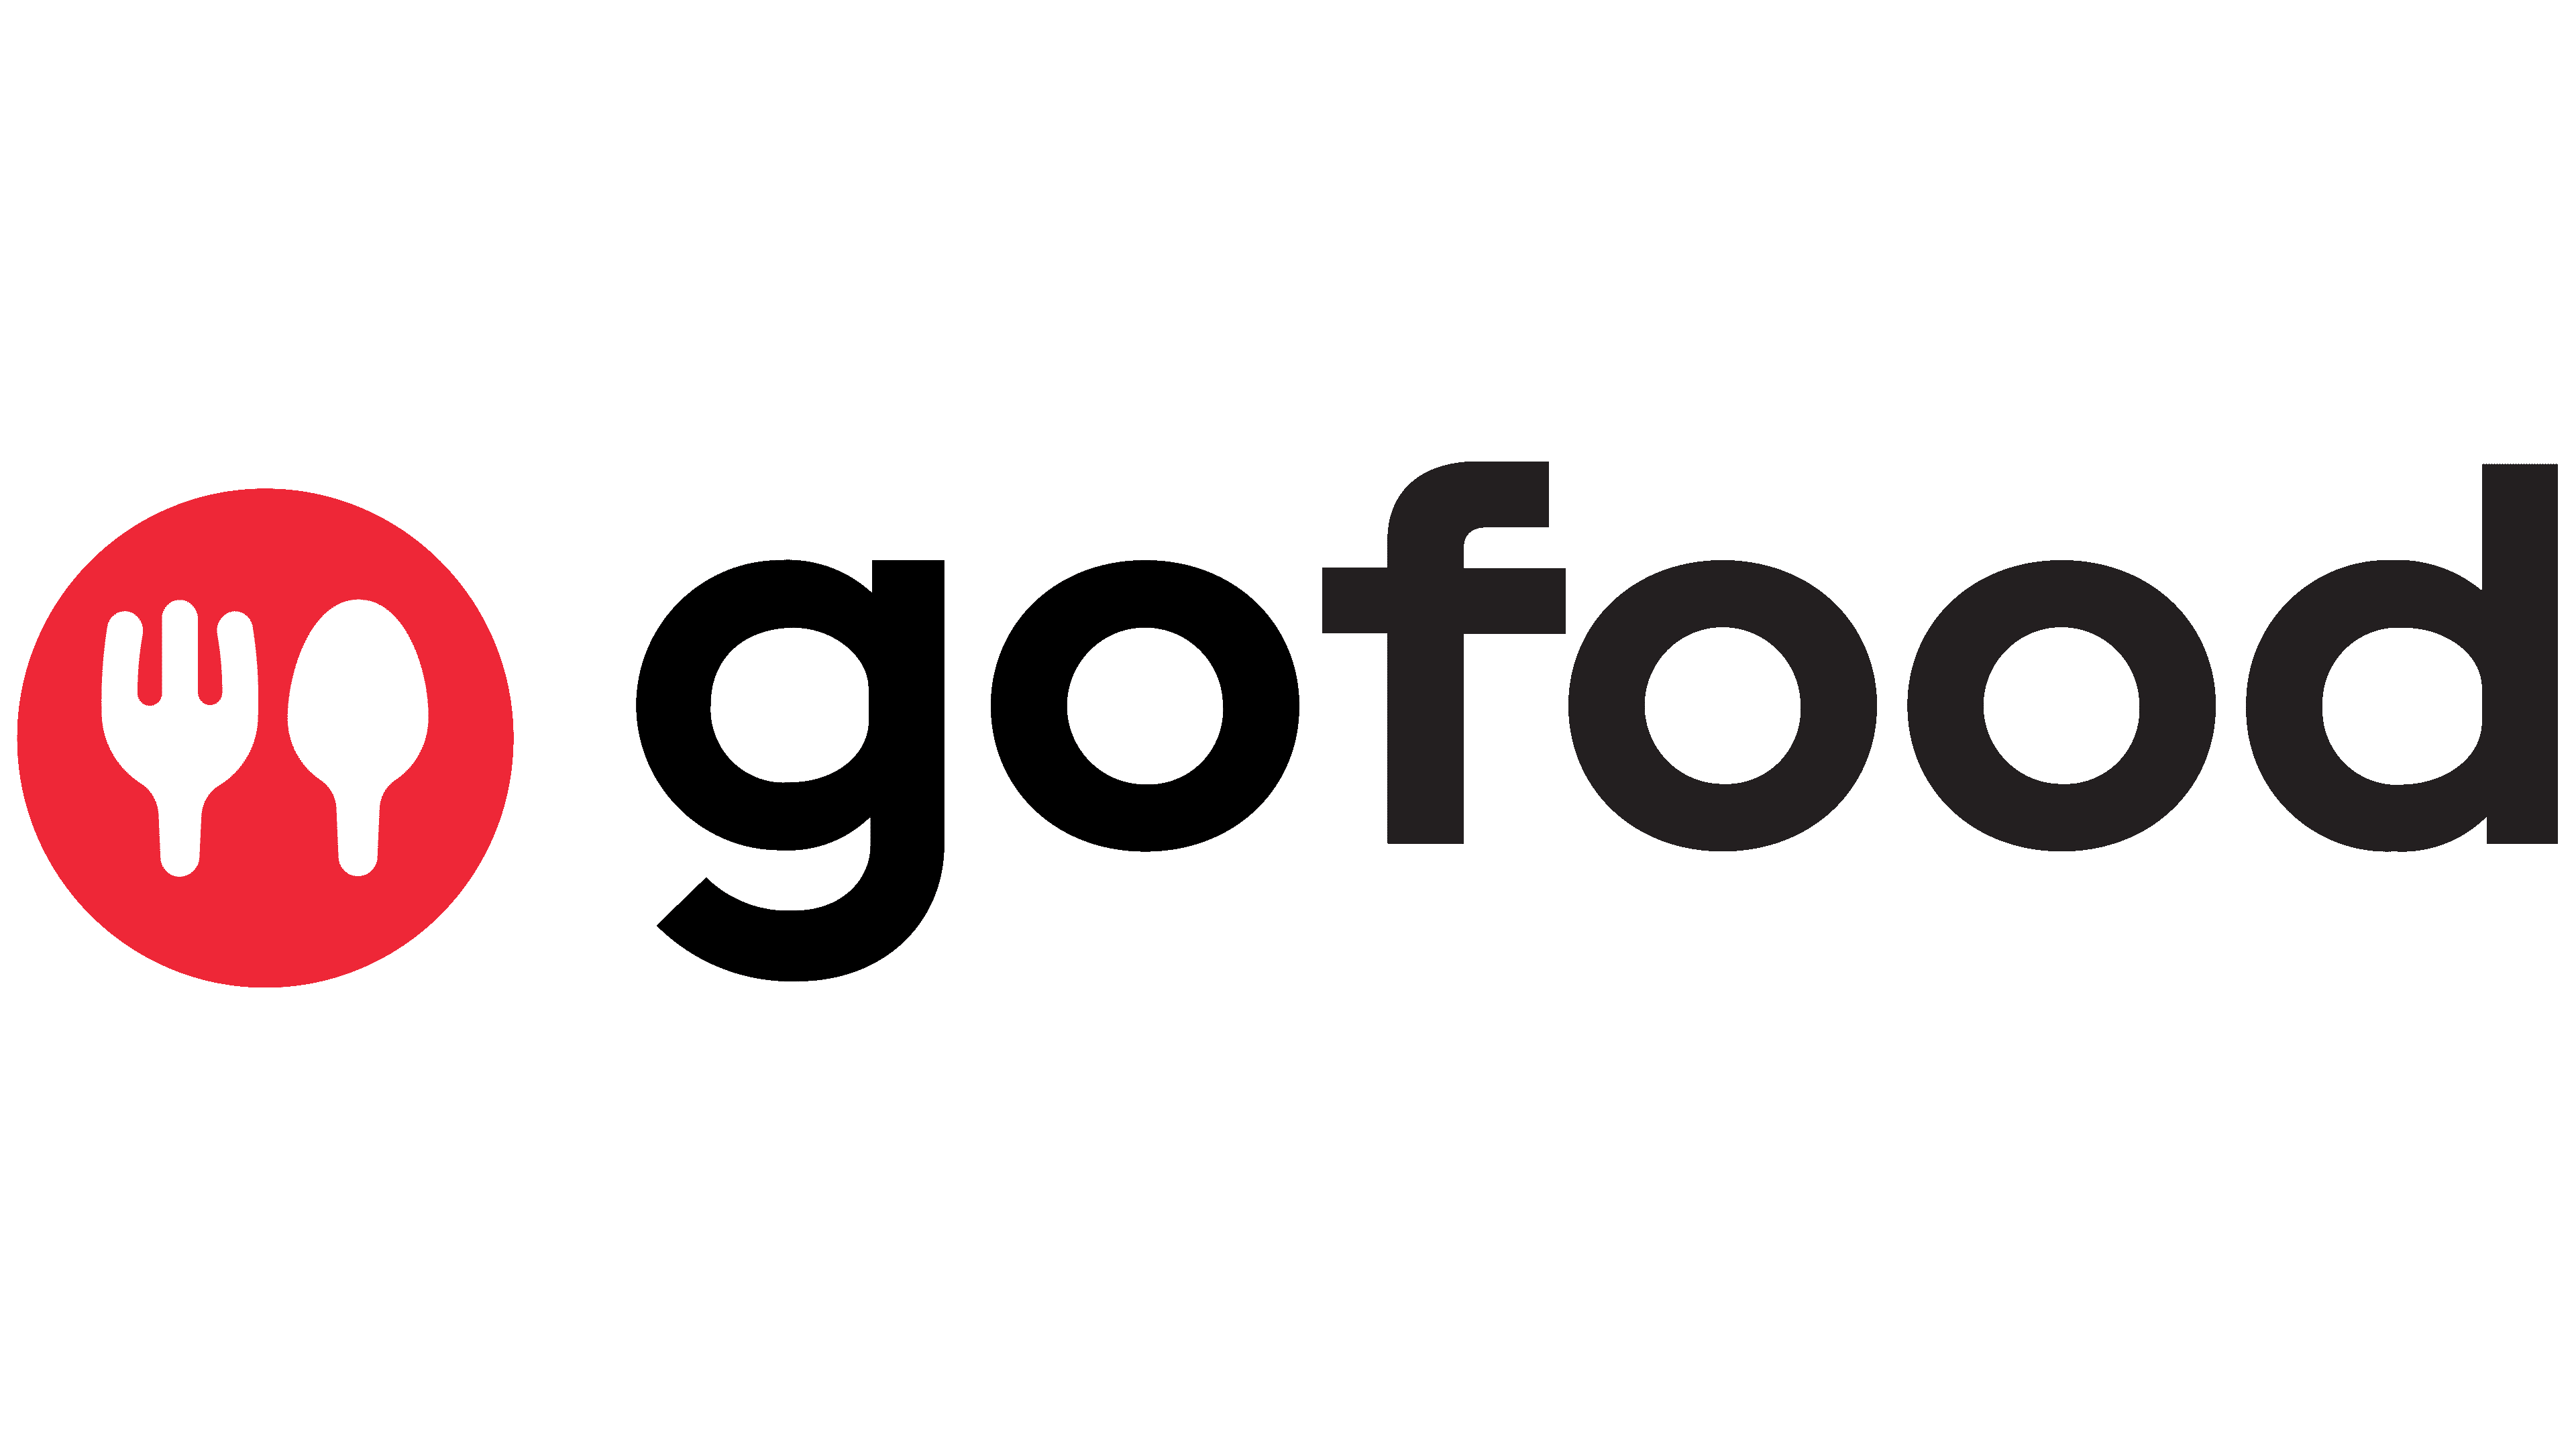 Gojek Logo - Gofood Logo, symbol, meaning, history ...